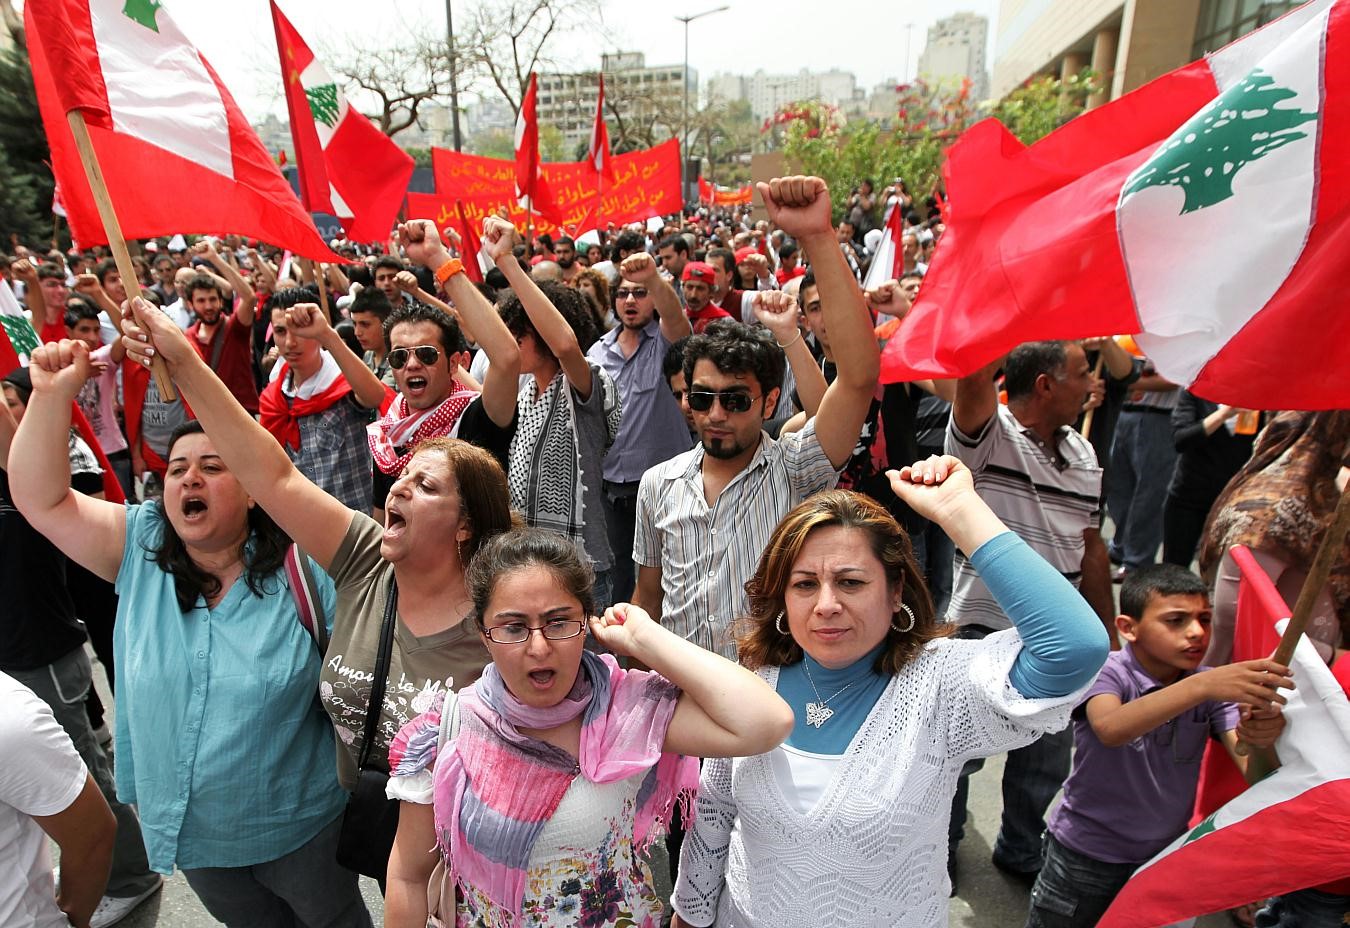 ÇEVİRİ | Lübnan Komünist Partisi ile son gelişmeler üzerine röportaj